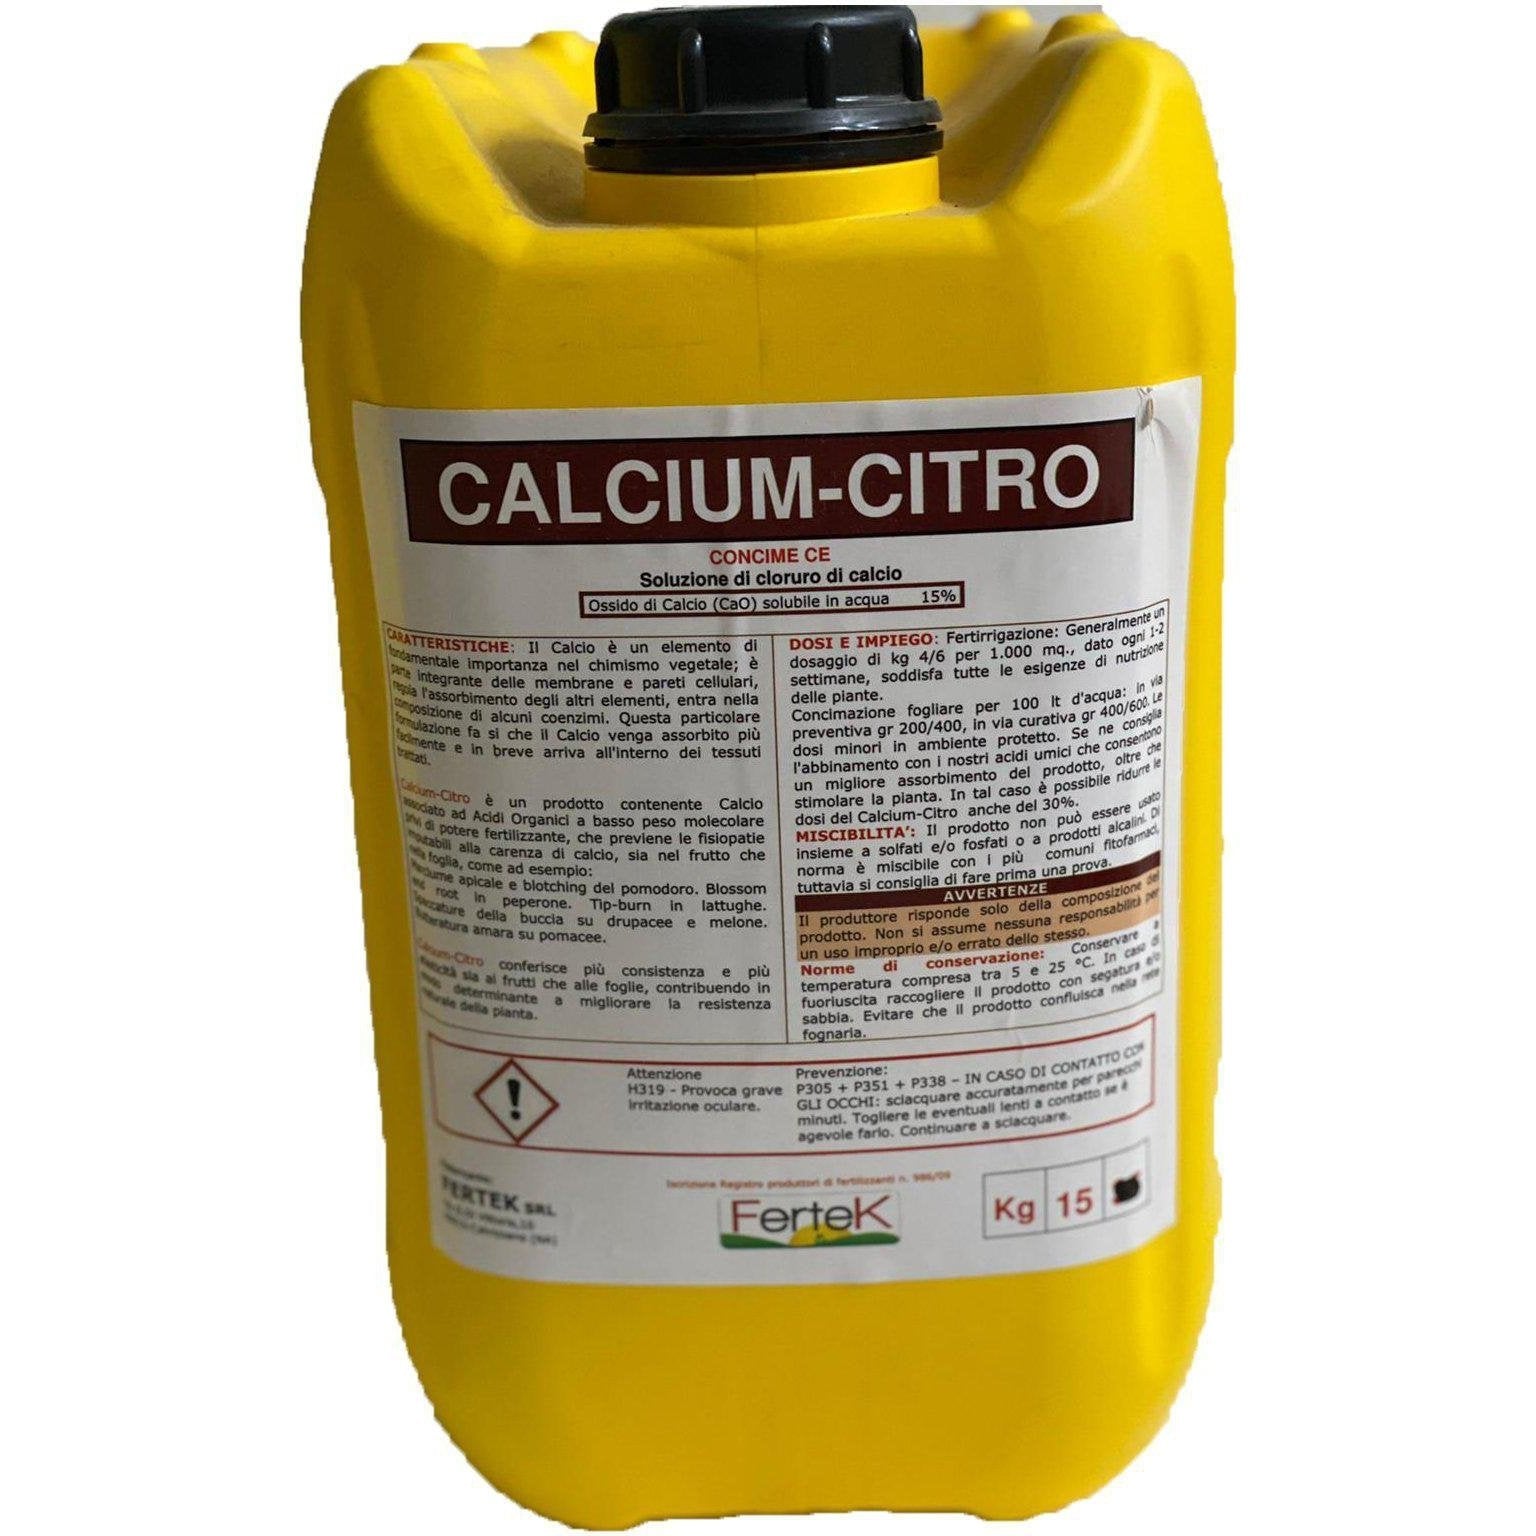 15 Kg CALCIUM-CITRO Concime CE soluzione di Cloruro di Calcio solubile in acqua-Farmagrishop.it